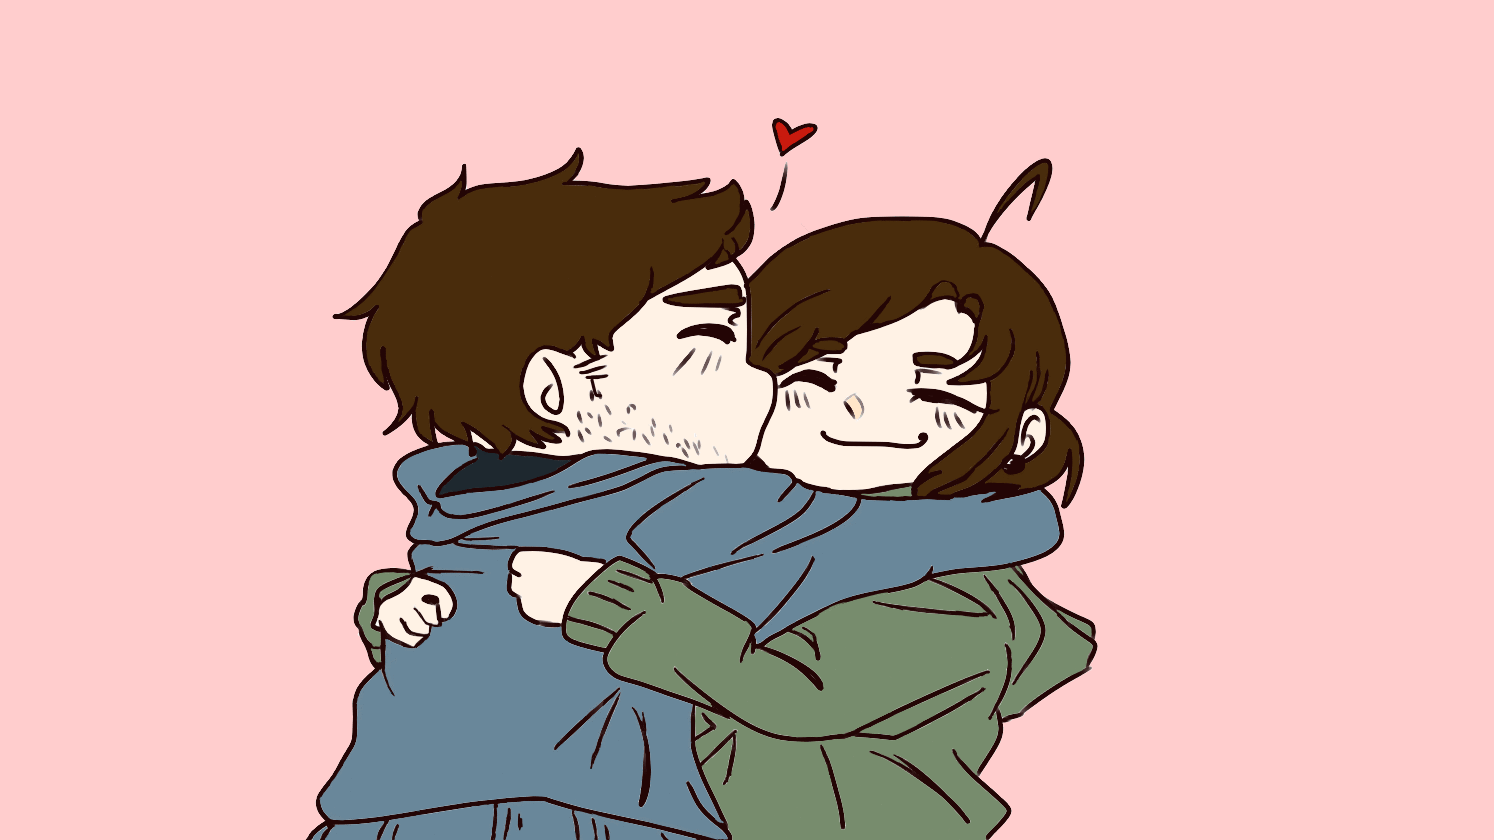 Animated Couple Kiss GIF 